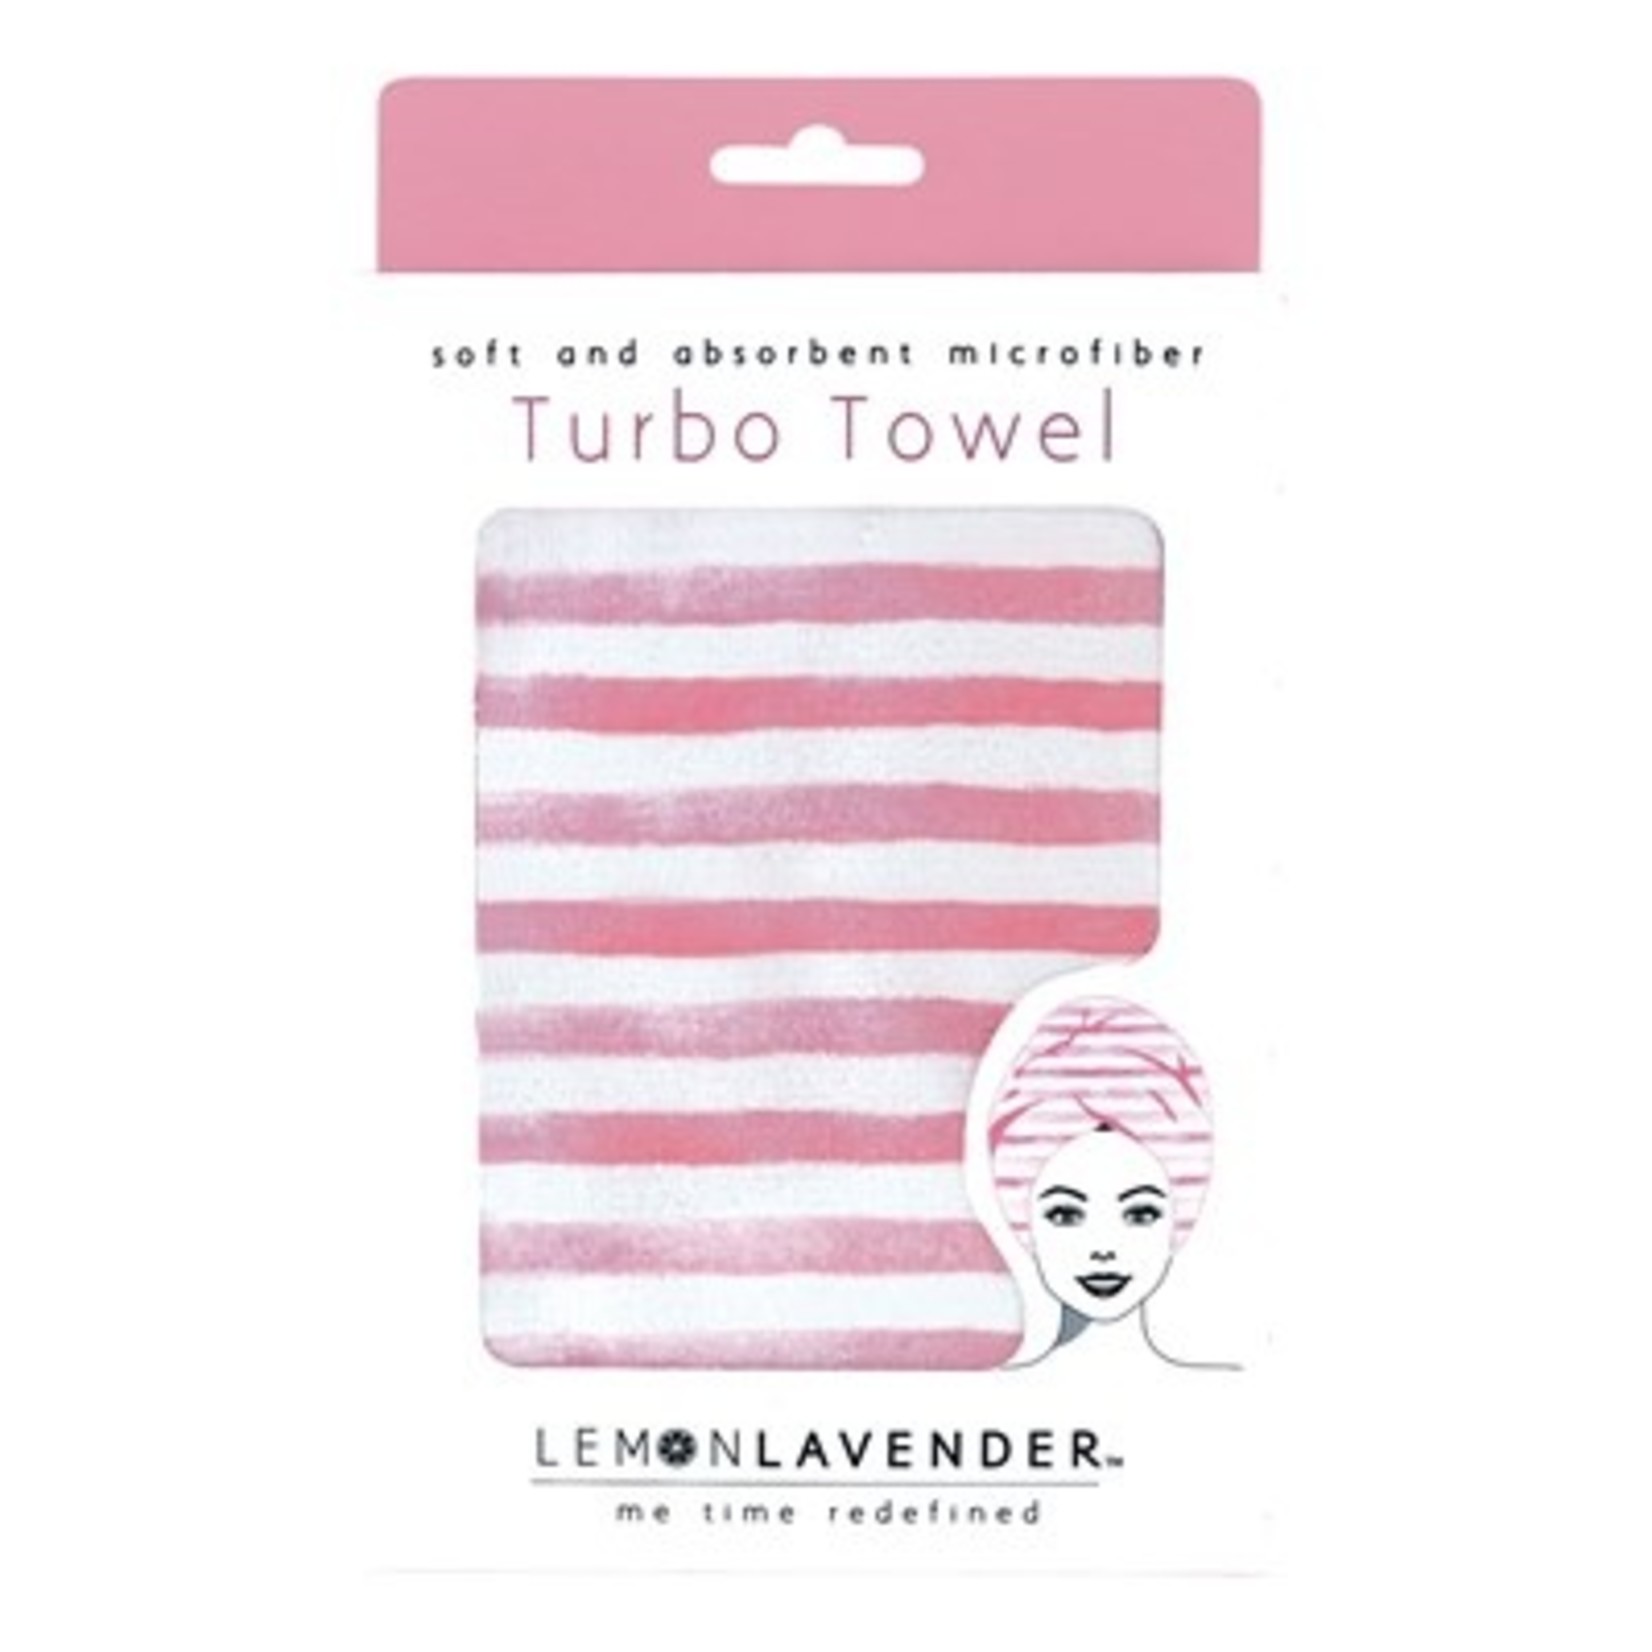 DM Merchandising Lemon Lavender - Turbo Towel - Pink/White Stripes